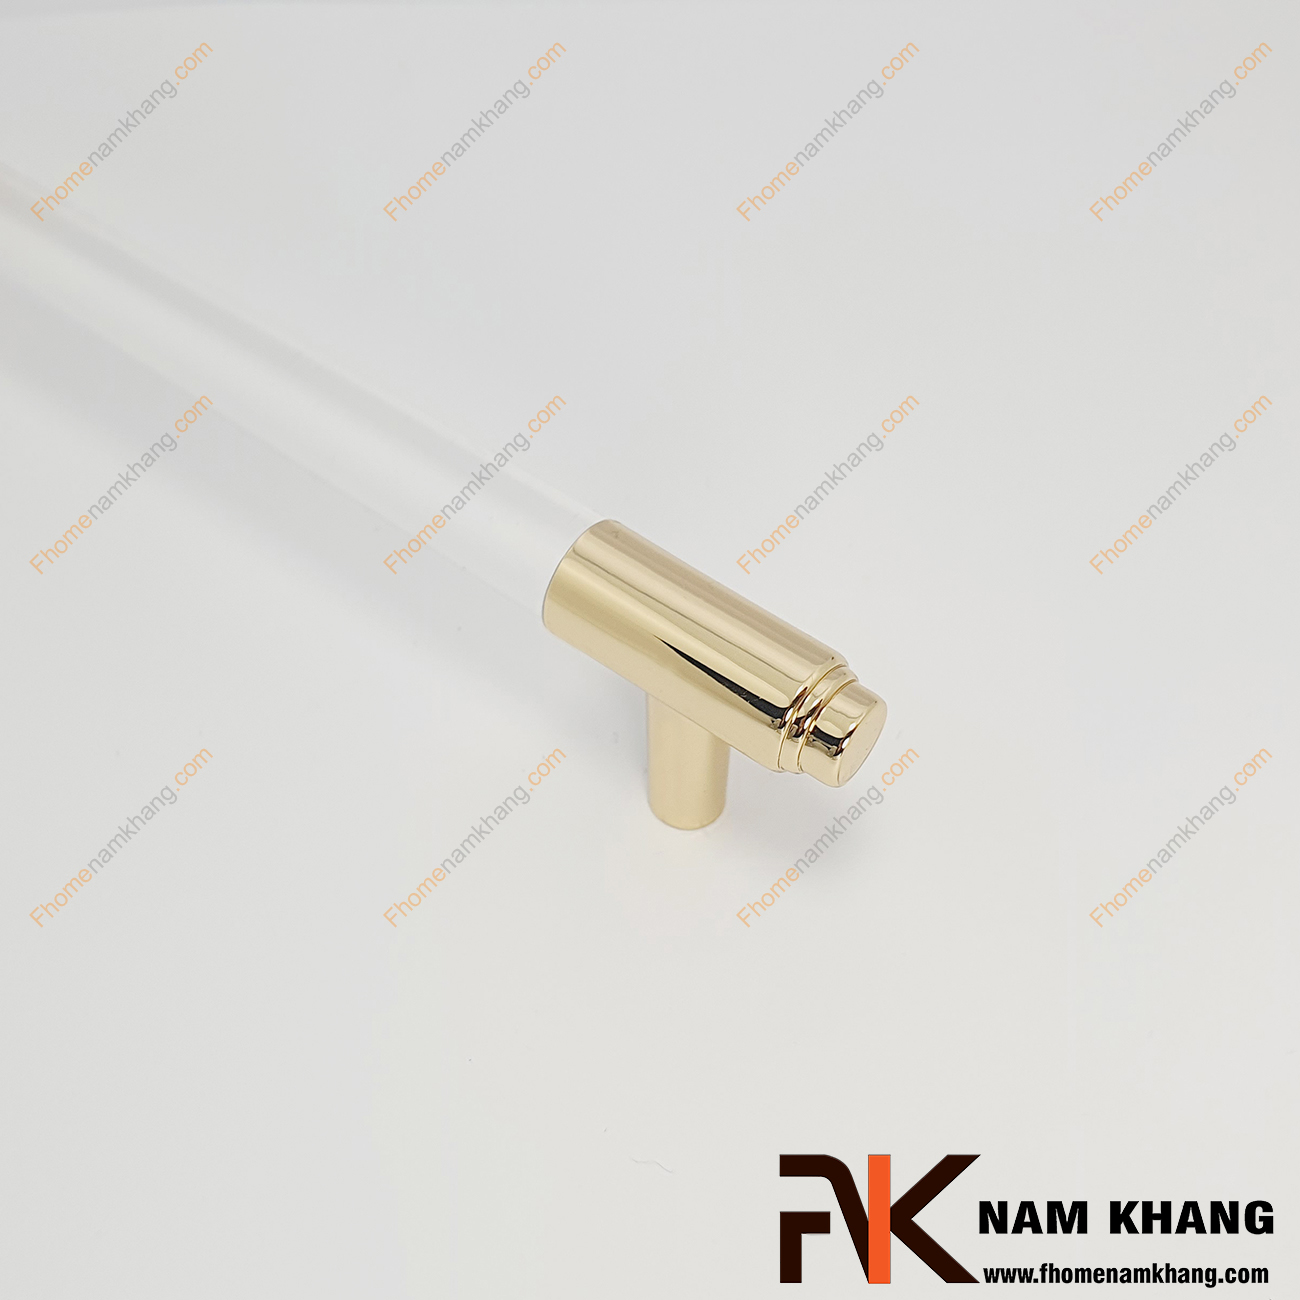 Tay nắm tủ dạng thanh tròn NK465-TV là dạng tay nắm tủ phối hợp giữa dòng hợp kim cao cấp và keo epoxy trong suốt tạo thành dòng sản phẩm chất lượng.